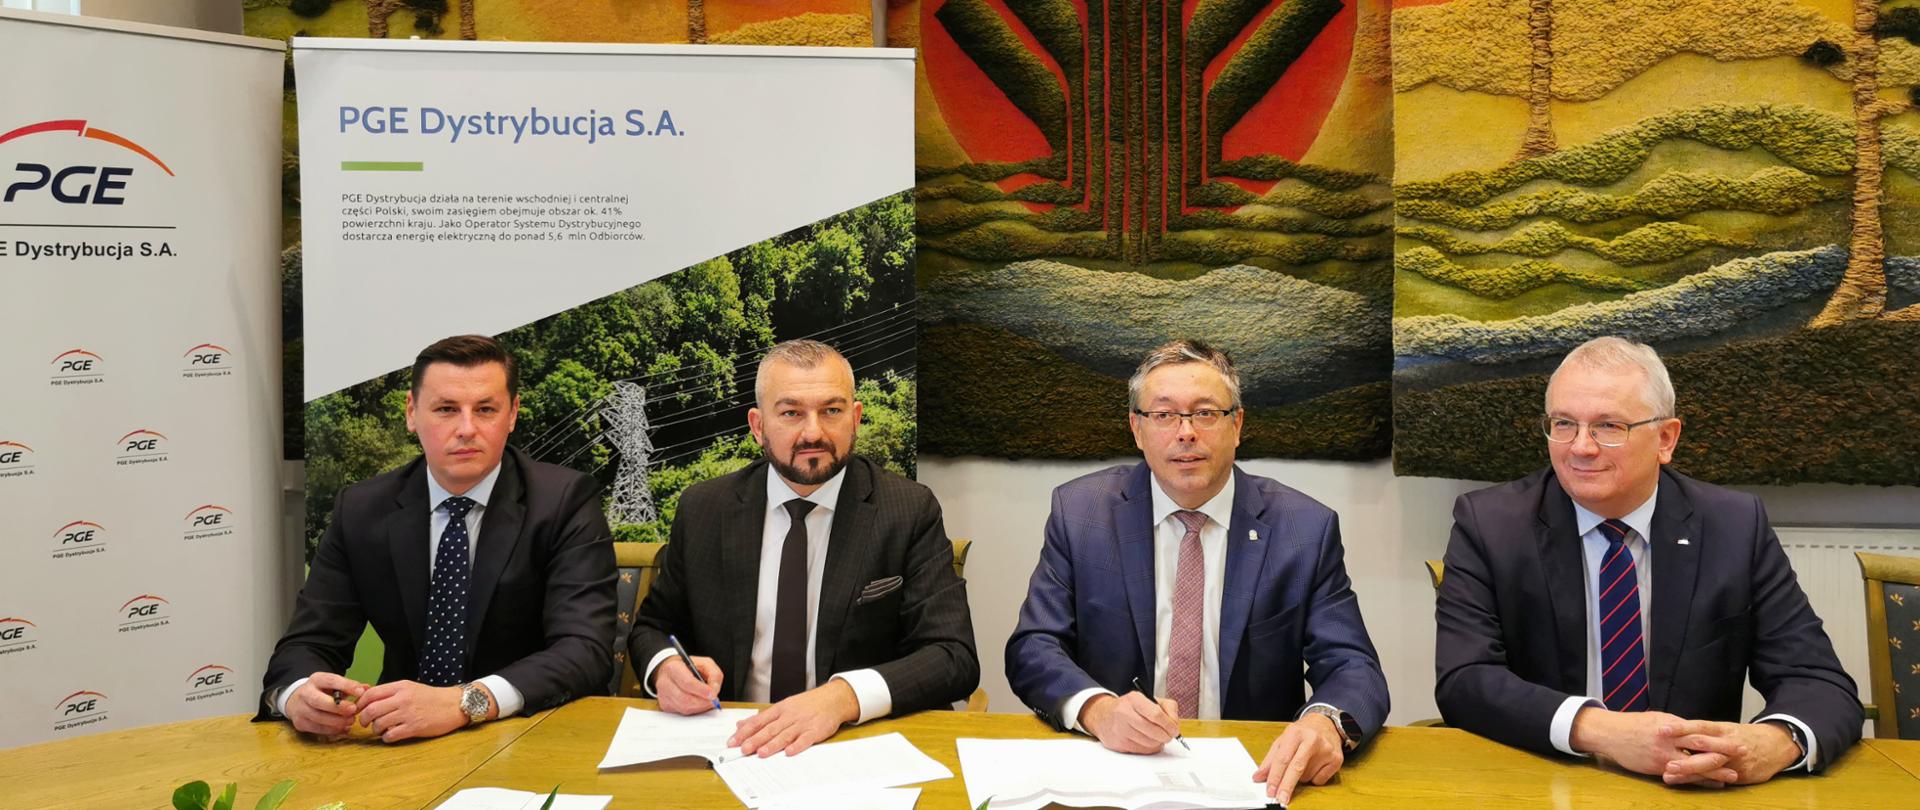 Artur Michalski, wiceprezes NFOŚiGW podpisuje umowę z przedstawicielami spółki PGE. Umowa dotyczy budowy trzech magazynów energii. Kwota dofinansowania wynosi ponad 43 mln złotych